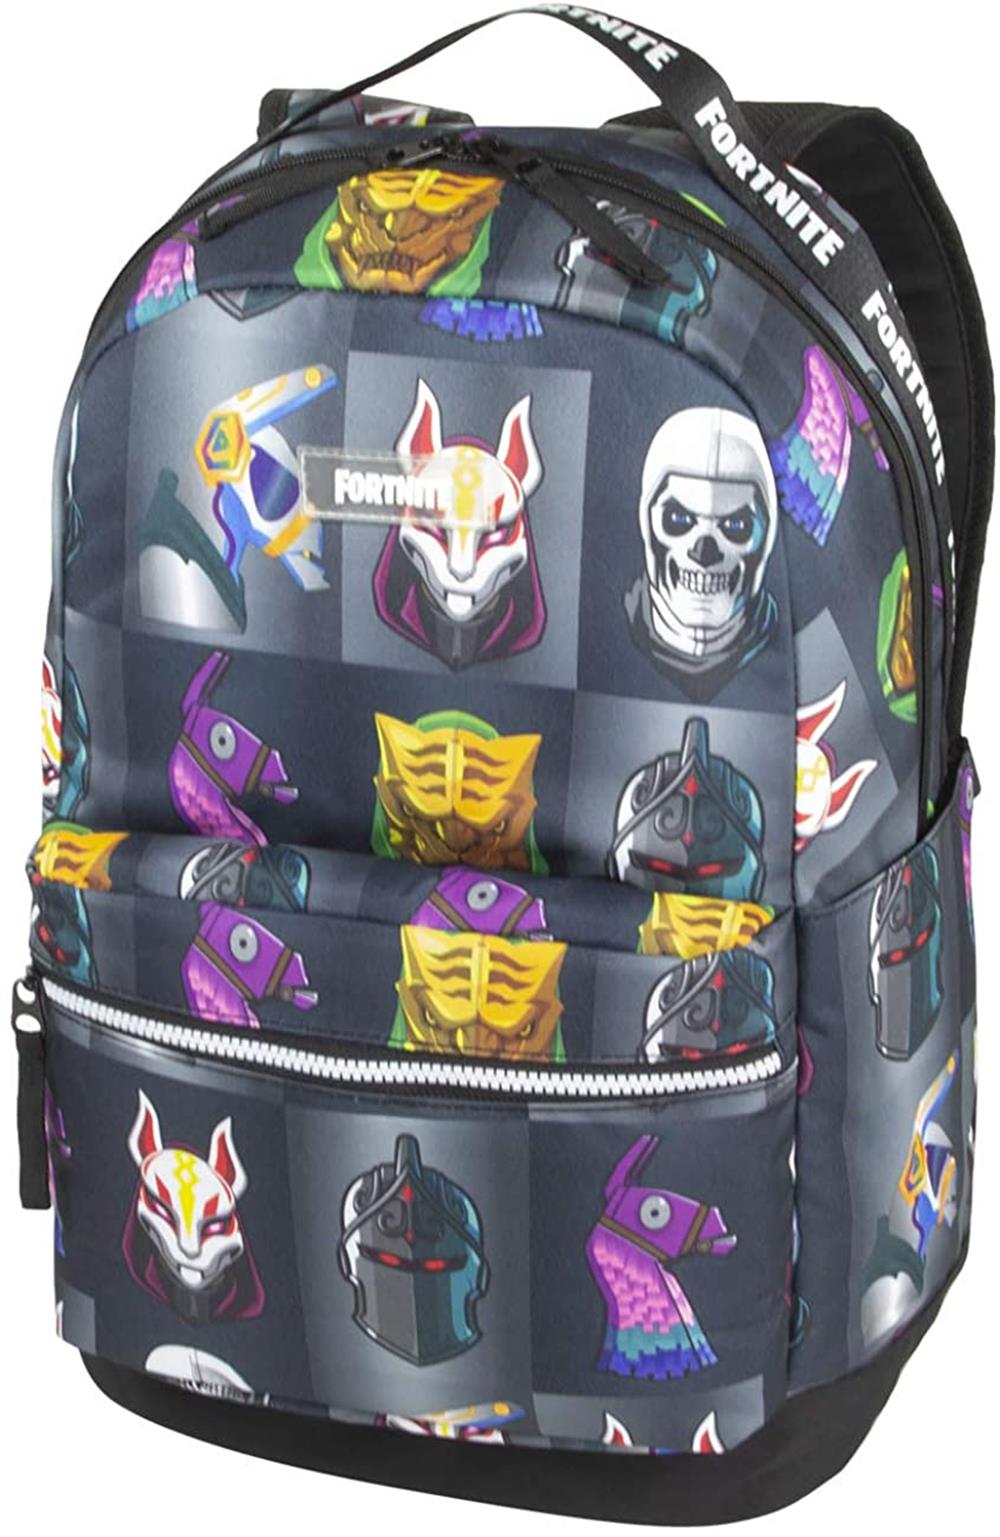 Fortnite Multiplier Backpack